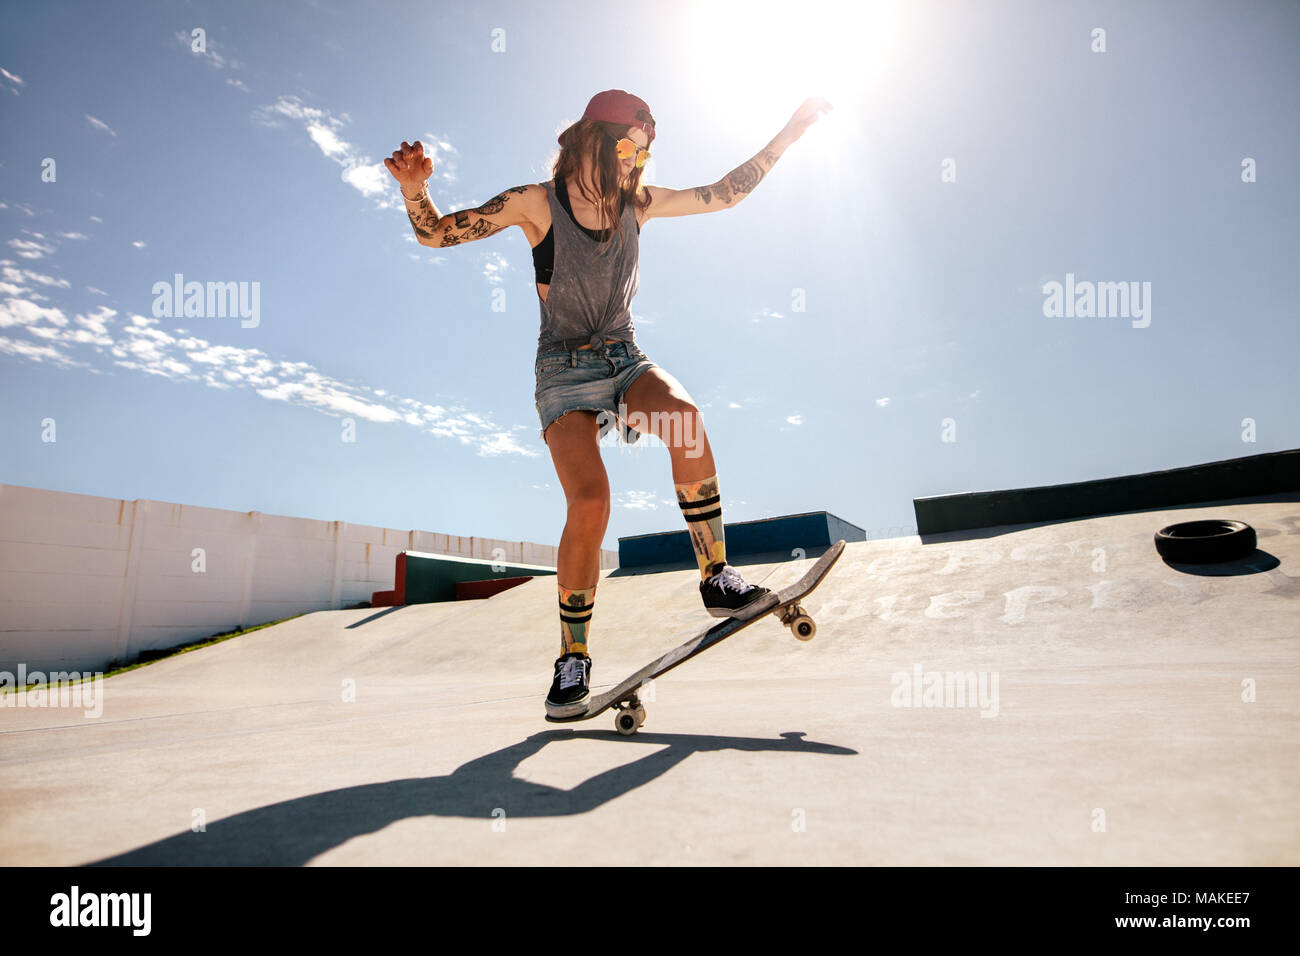 Skateboard skateur femelle au skate park. Les femmes faisant des tours sur  la planche à roulettes Photo Stock - Alamy